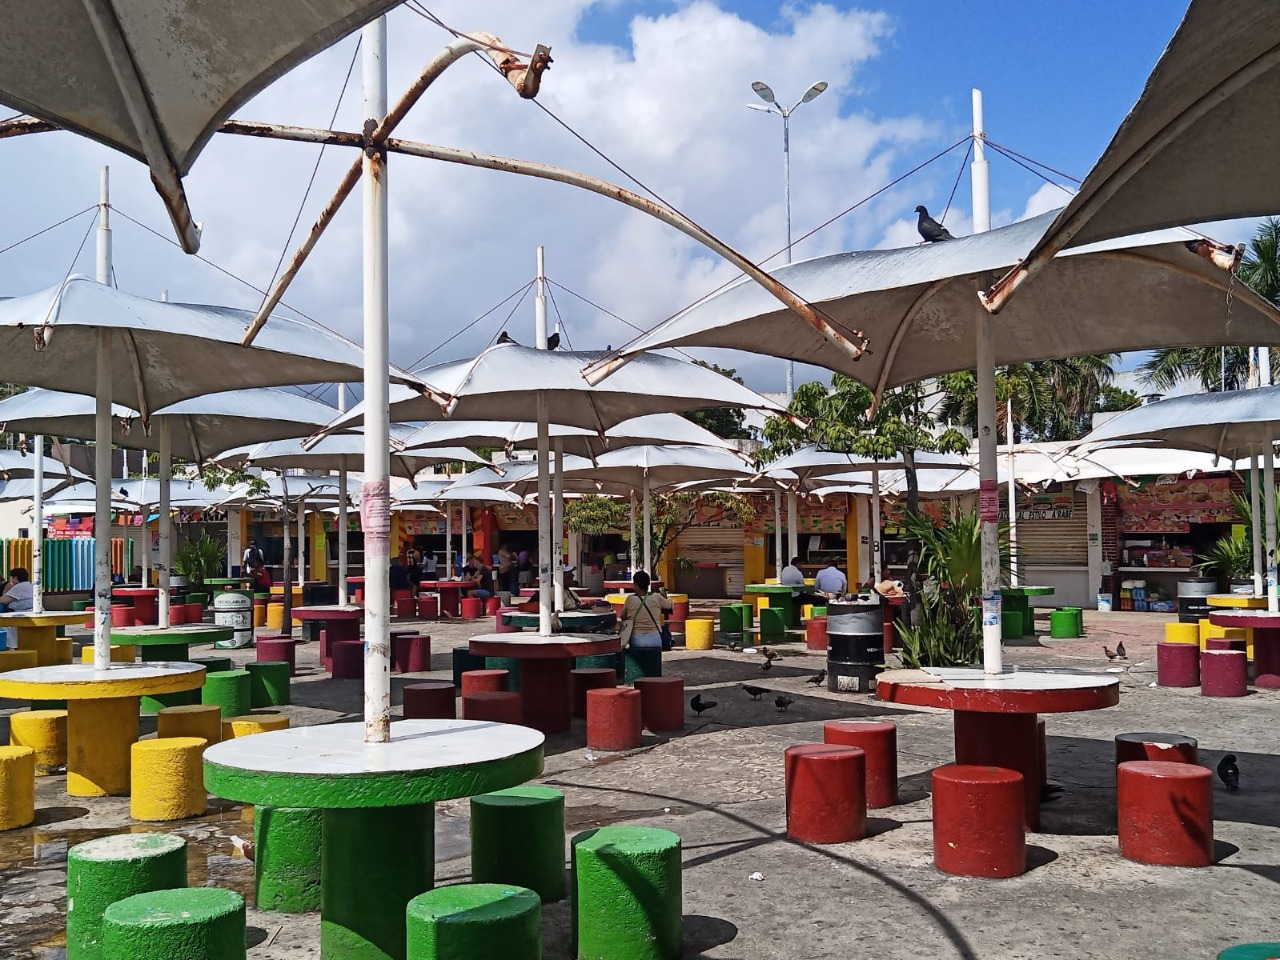 Alistan remodelación del Parque Las Palapas y la avenida Yaxchilán